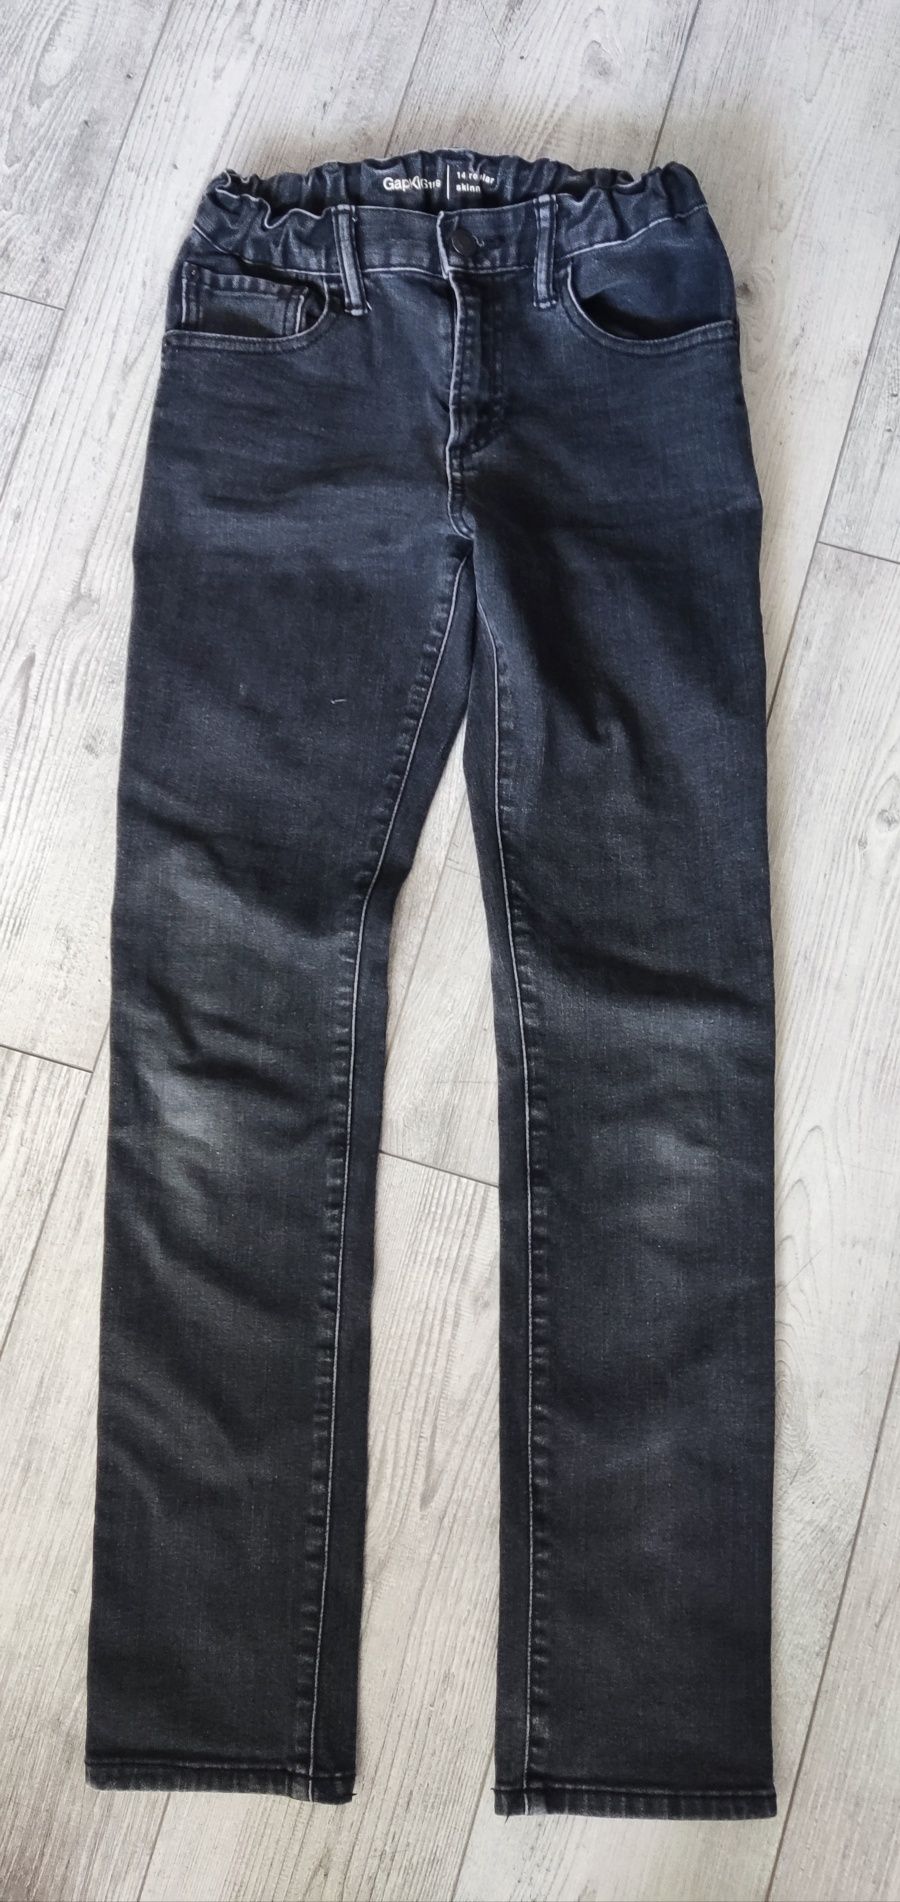 Spodnie jeansowe chłopięce GapKids r. 164